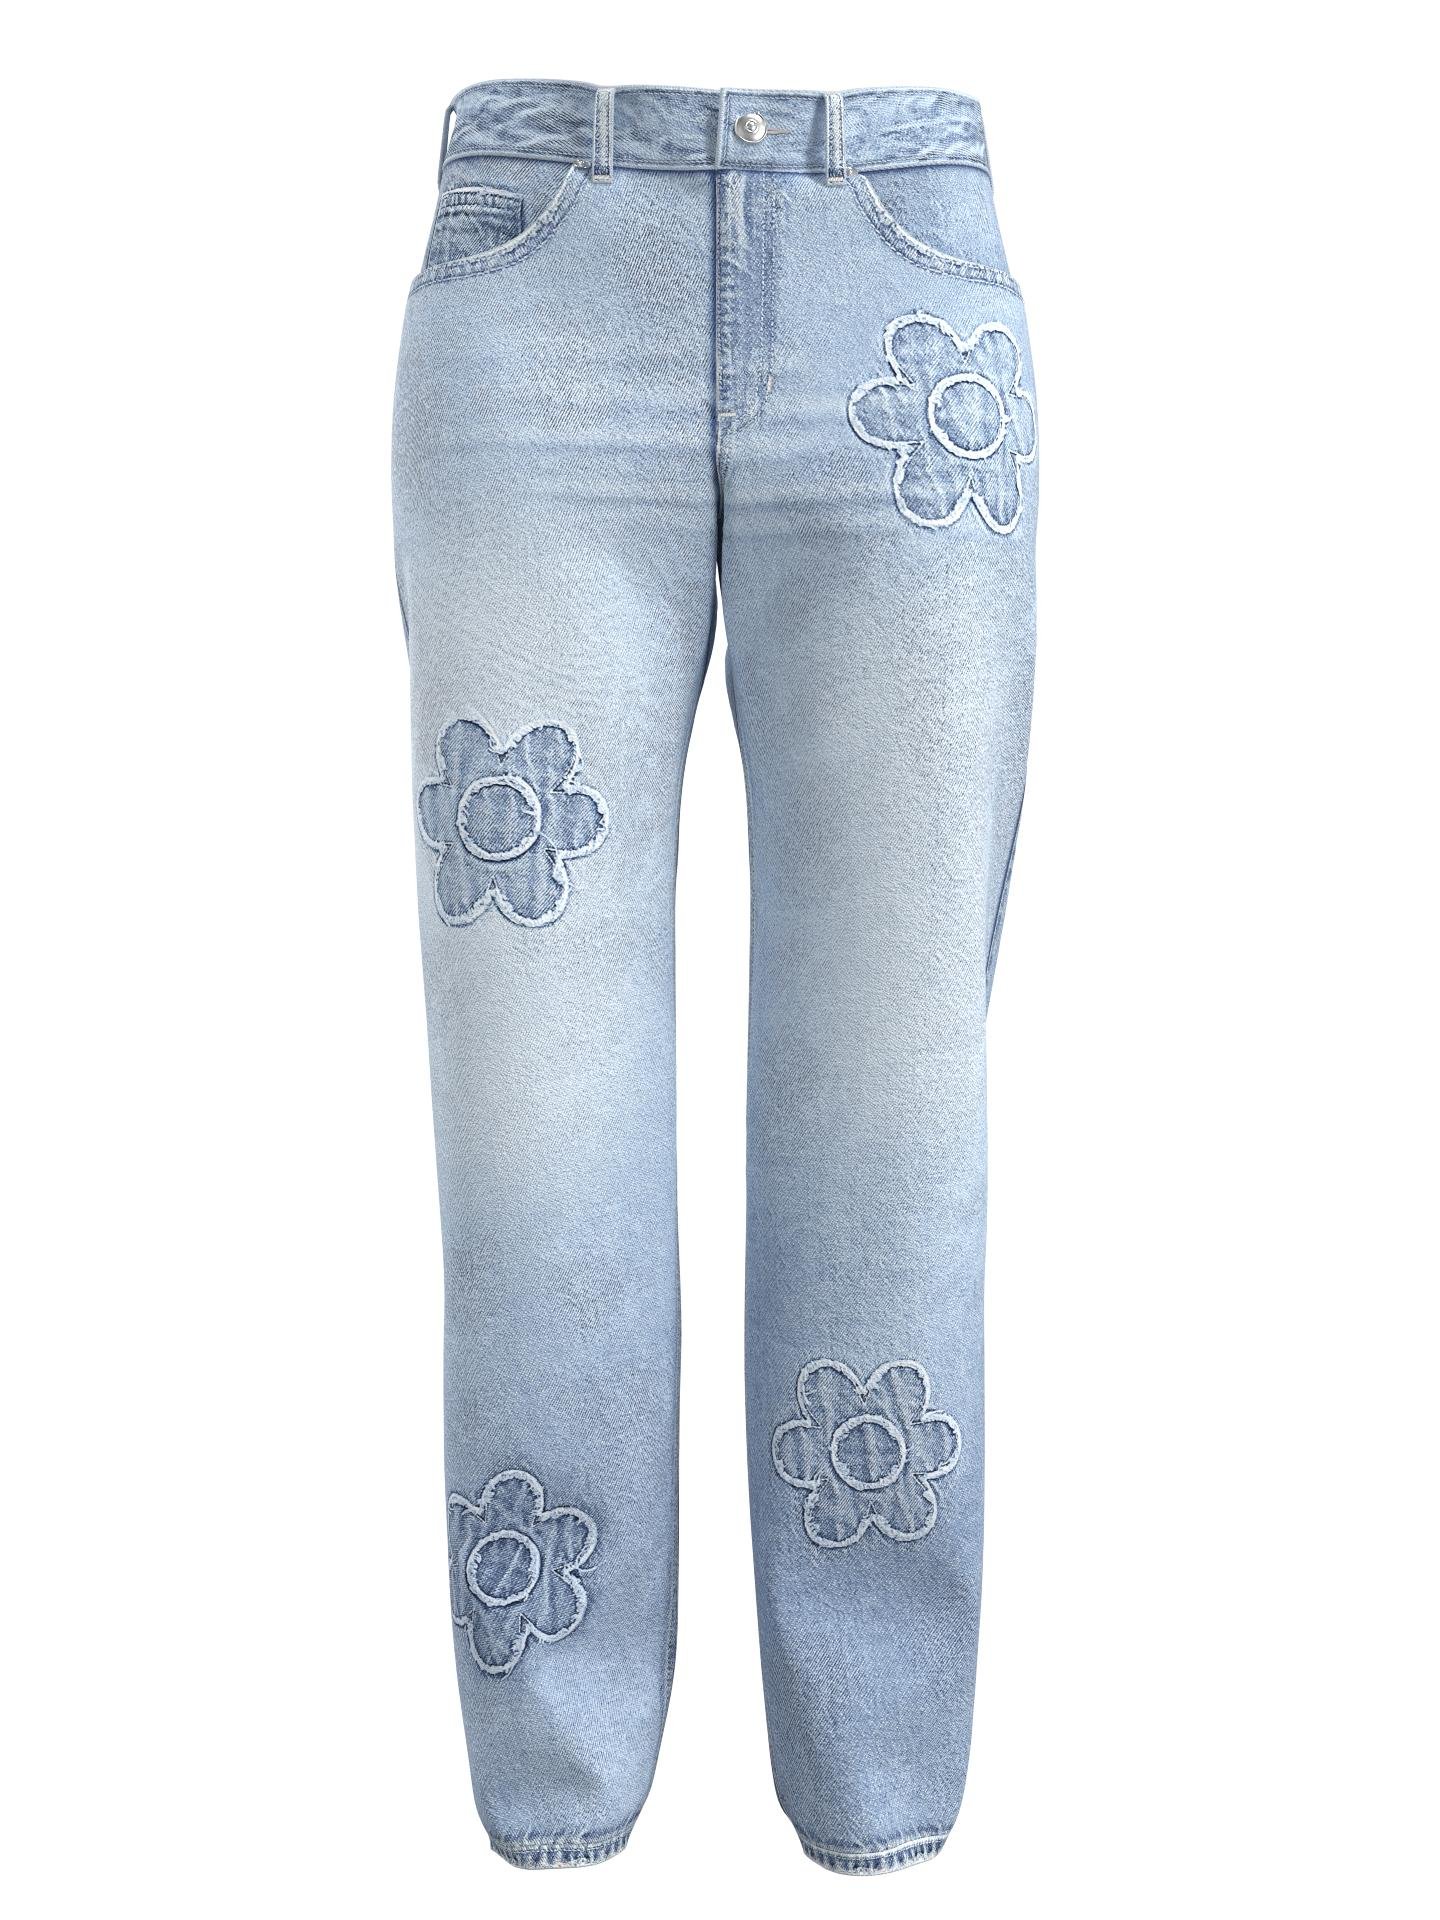 Pacsun Floral Patch Jeans by PACSUN